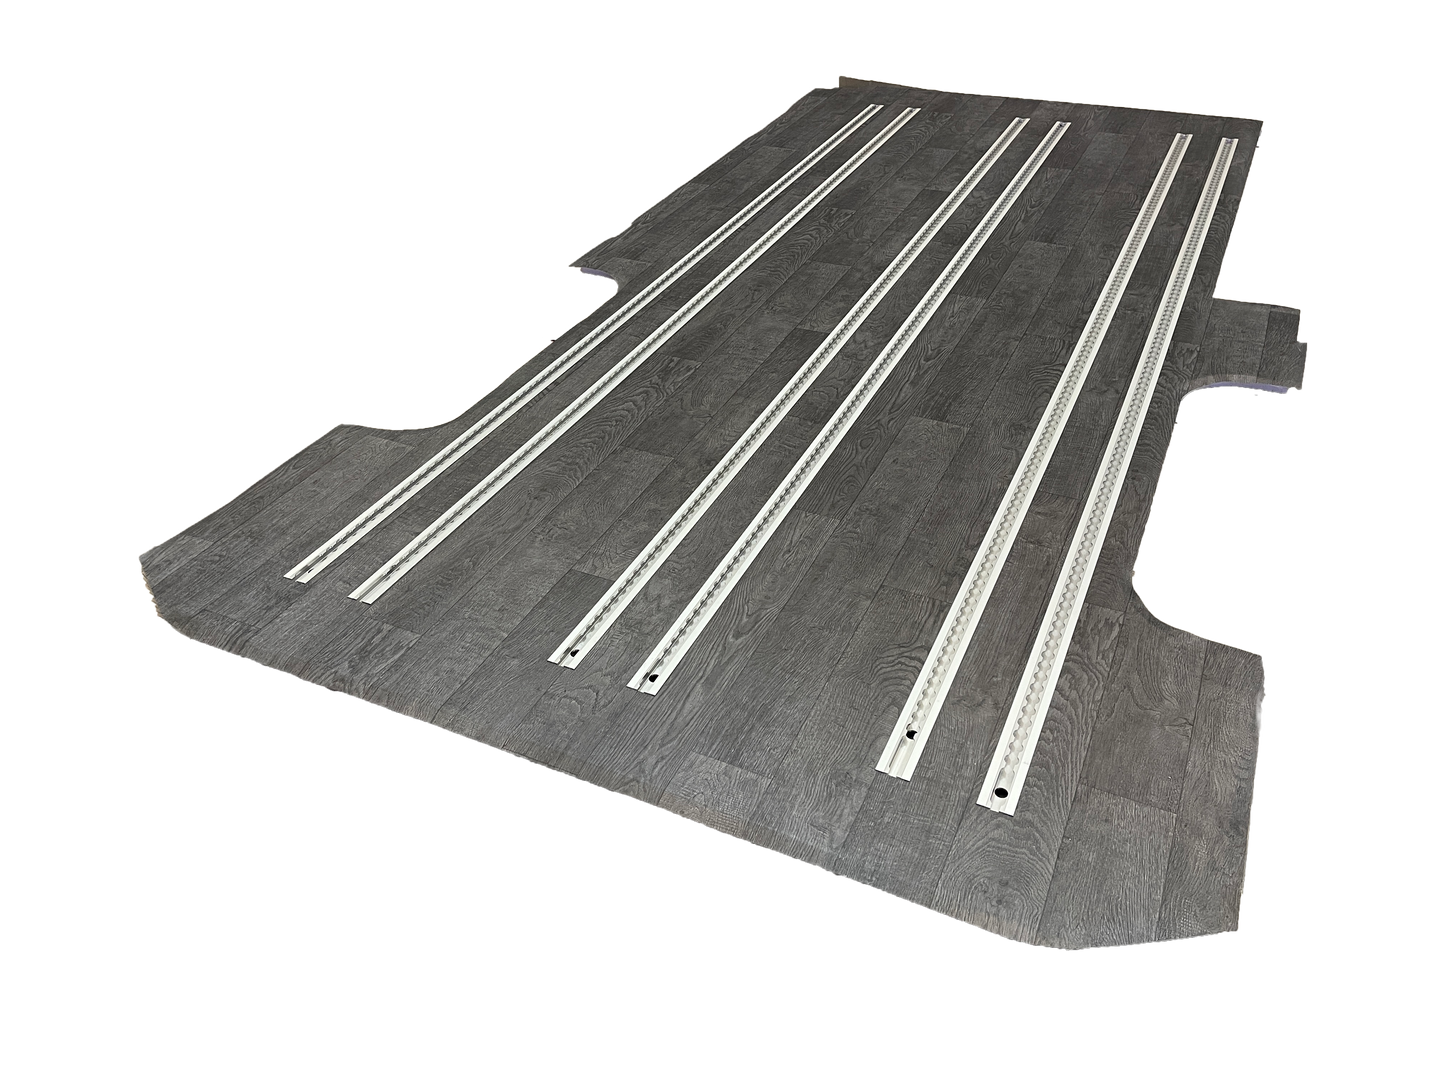 MB Sprinter SafeTrack Composite Floor System